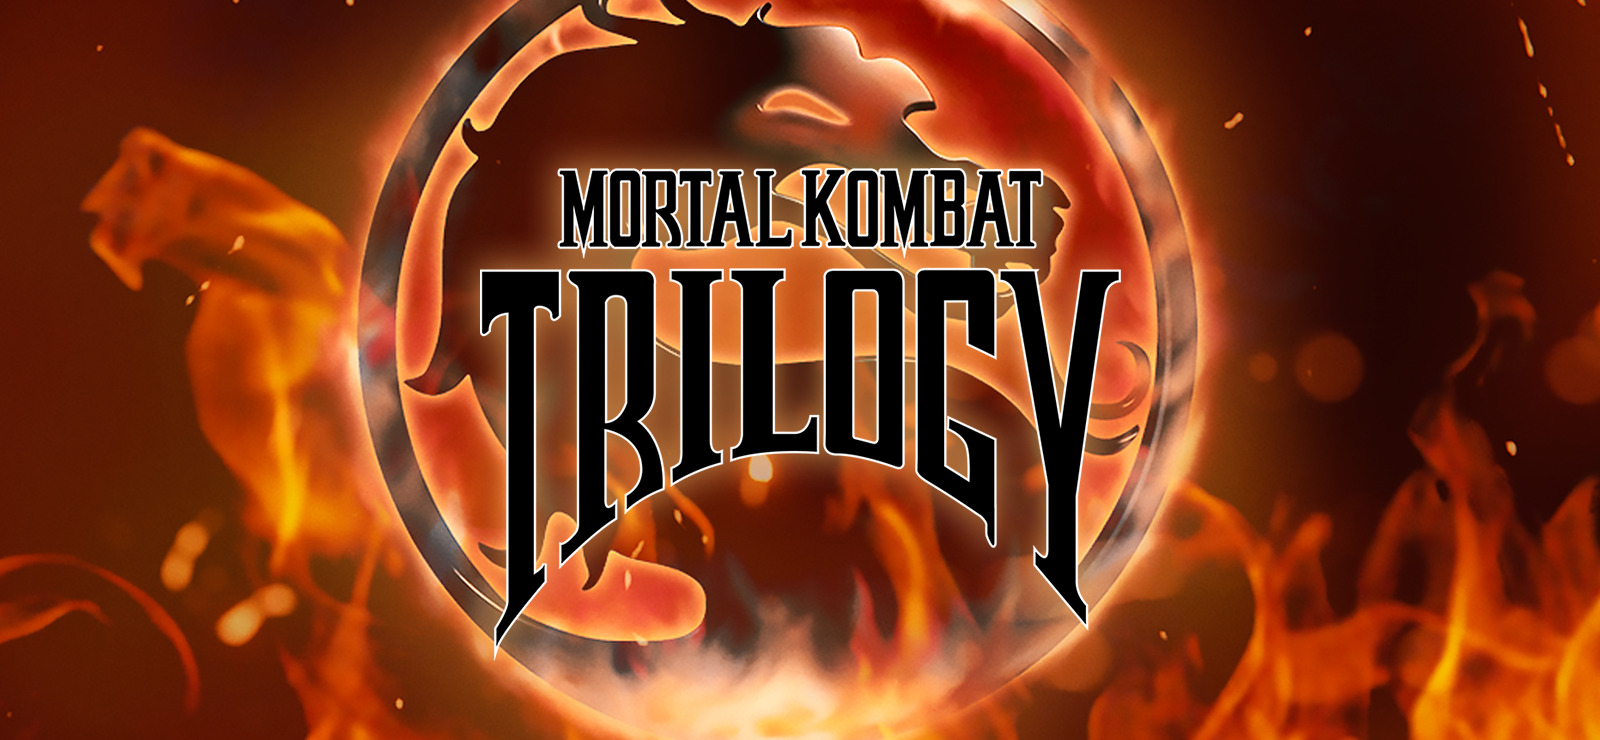 Mortal Kombat Trilogy on GOG.com